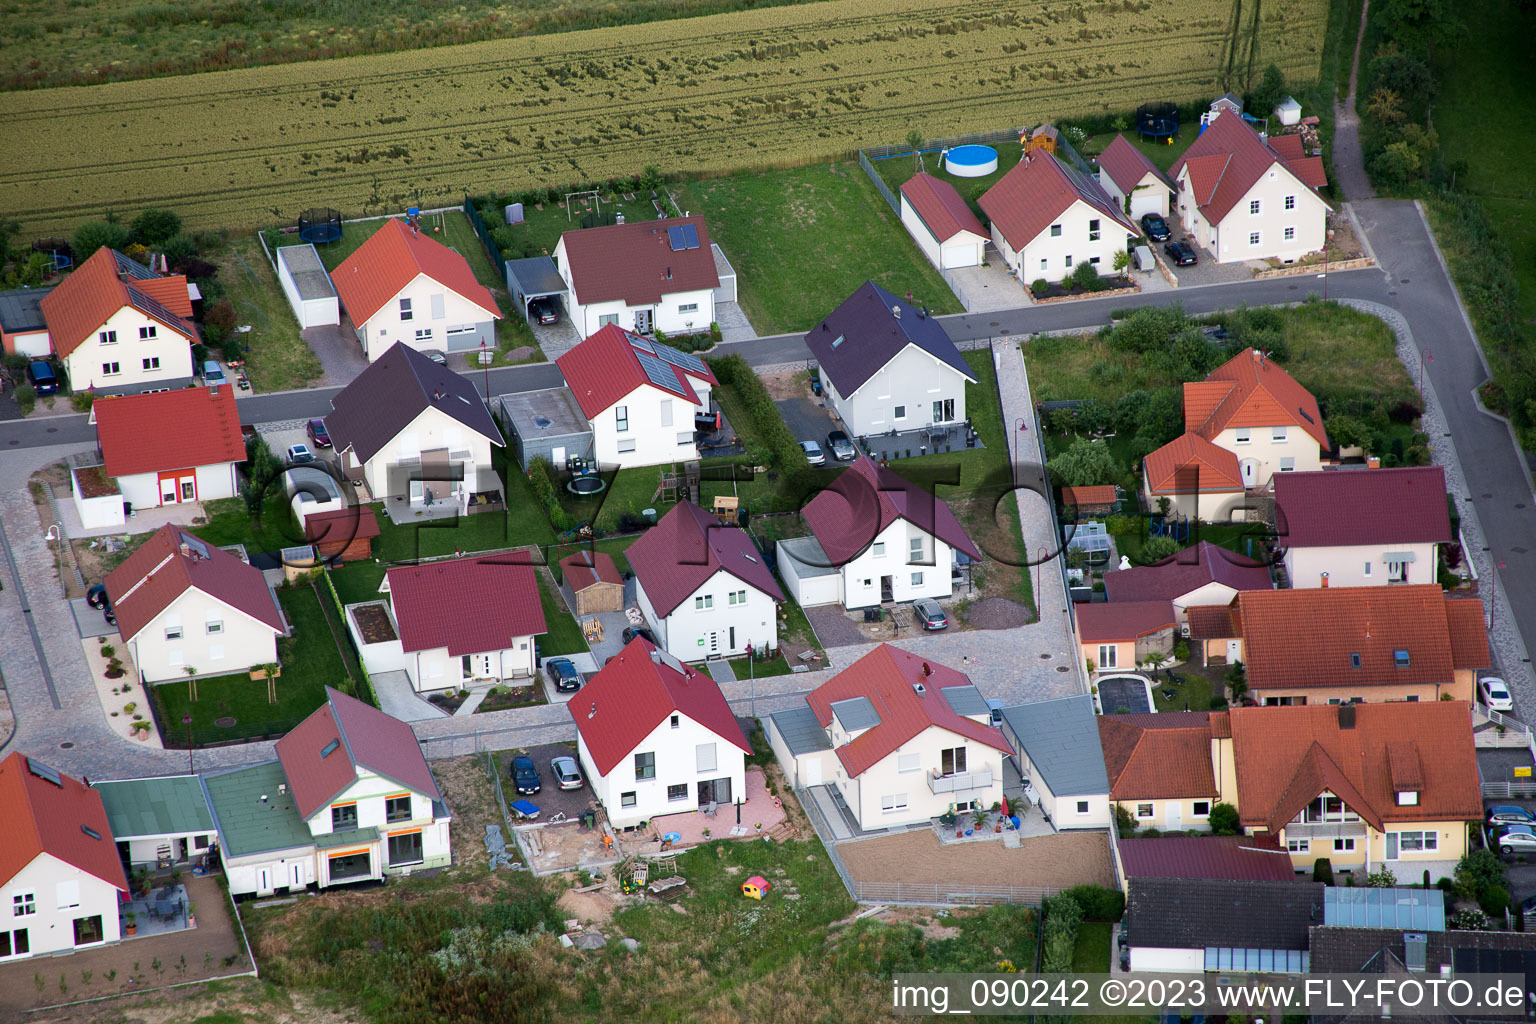 Barbelroth im Bundesland Rheinland-Pfalz, Deutschland aus der Drohnenperspektive